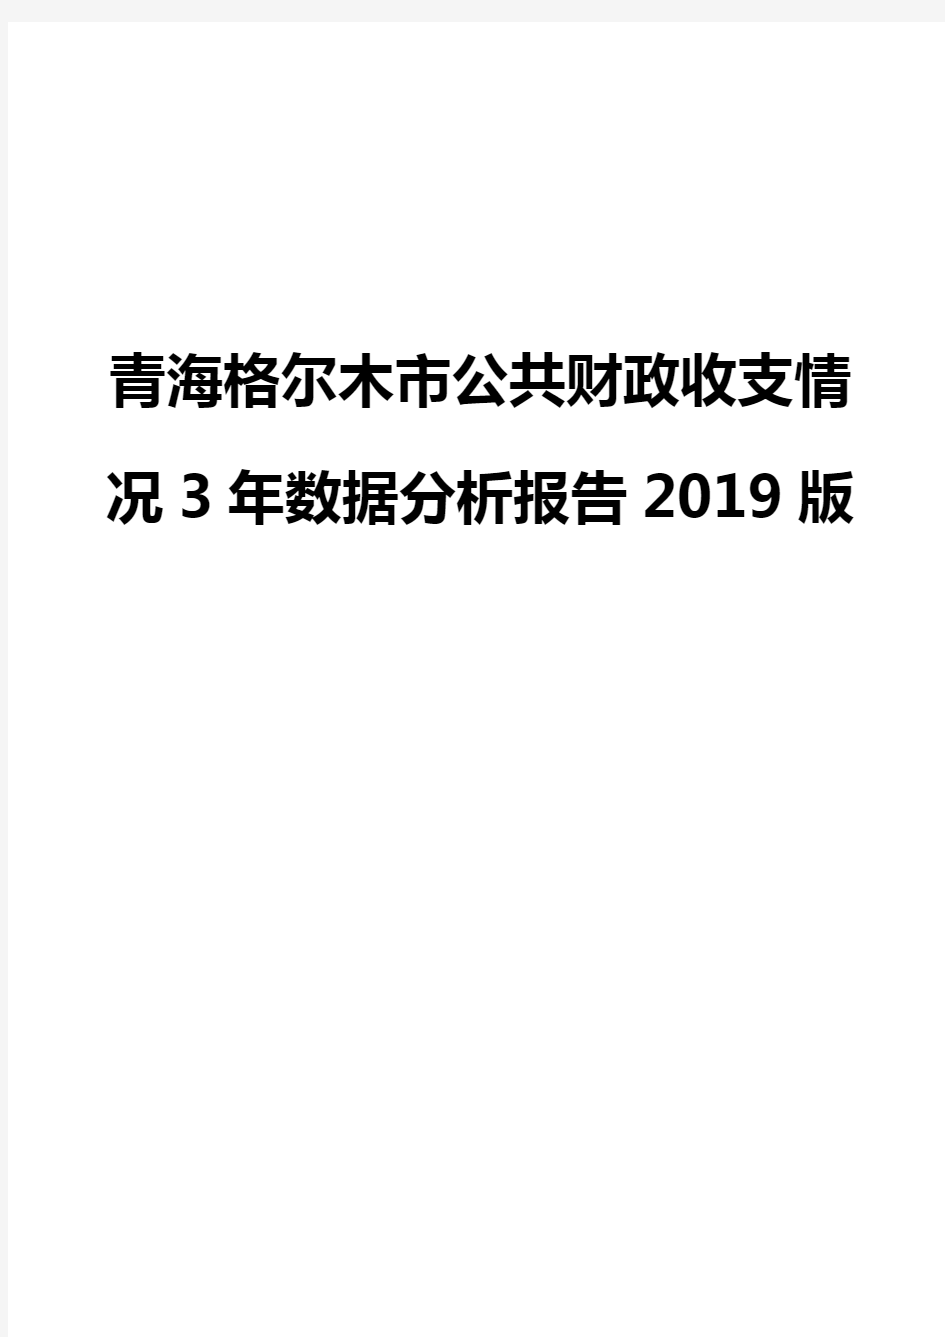 青海格尔木市公共财政收支情况3年数据分析报告2019版